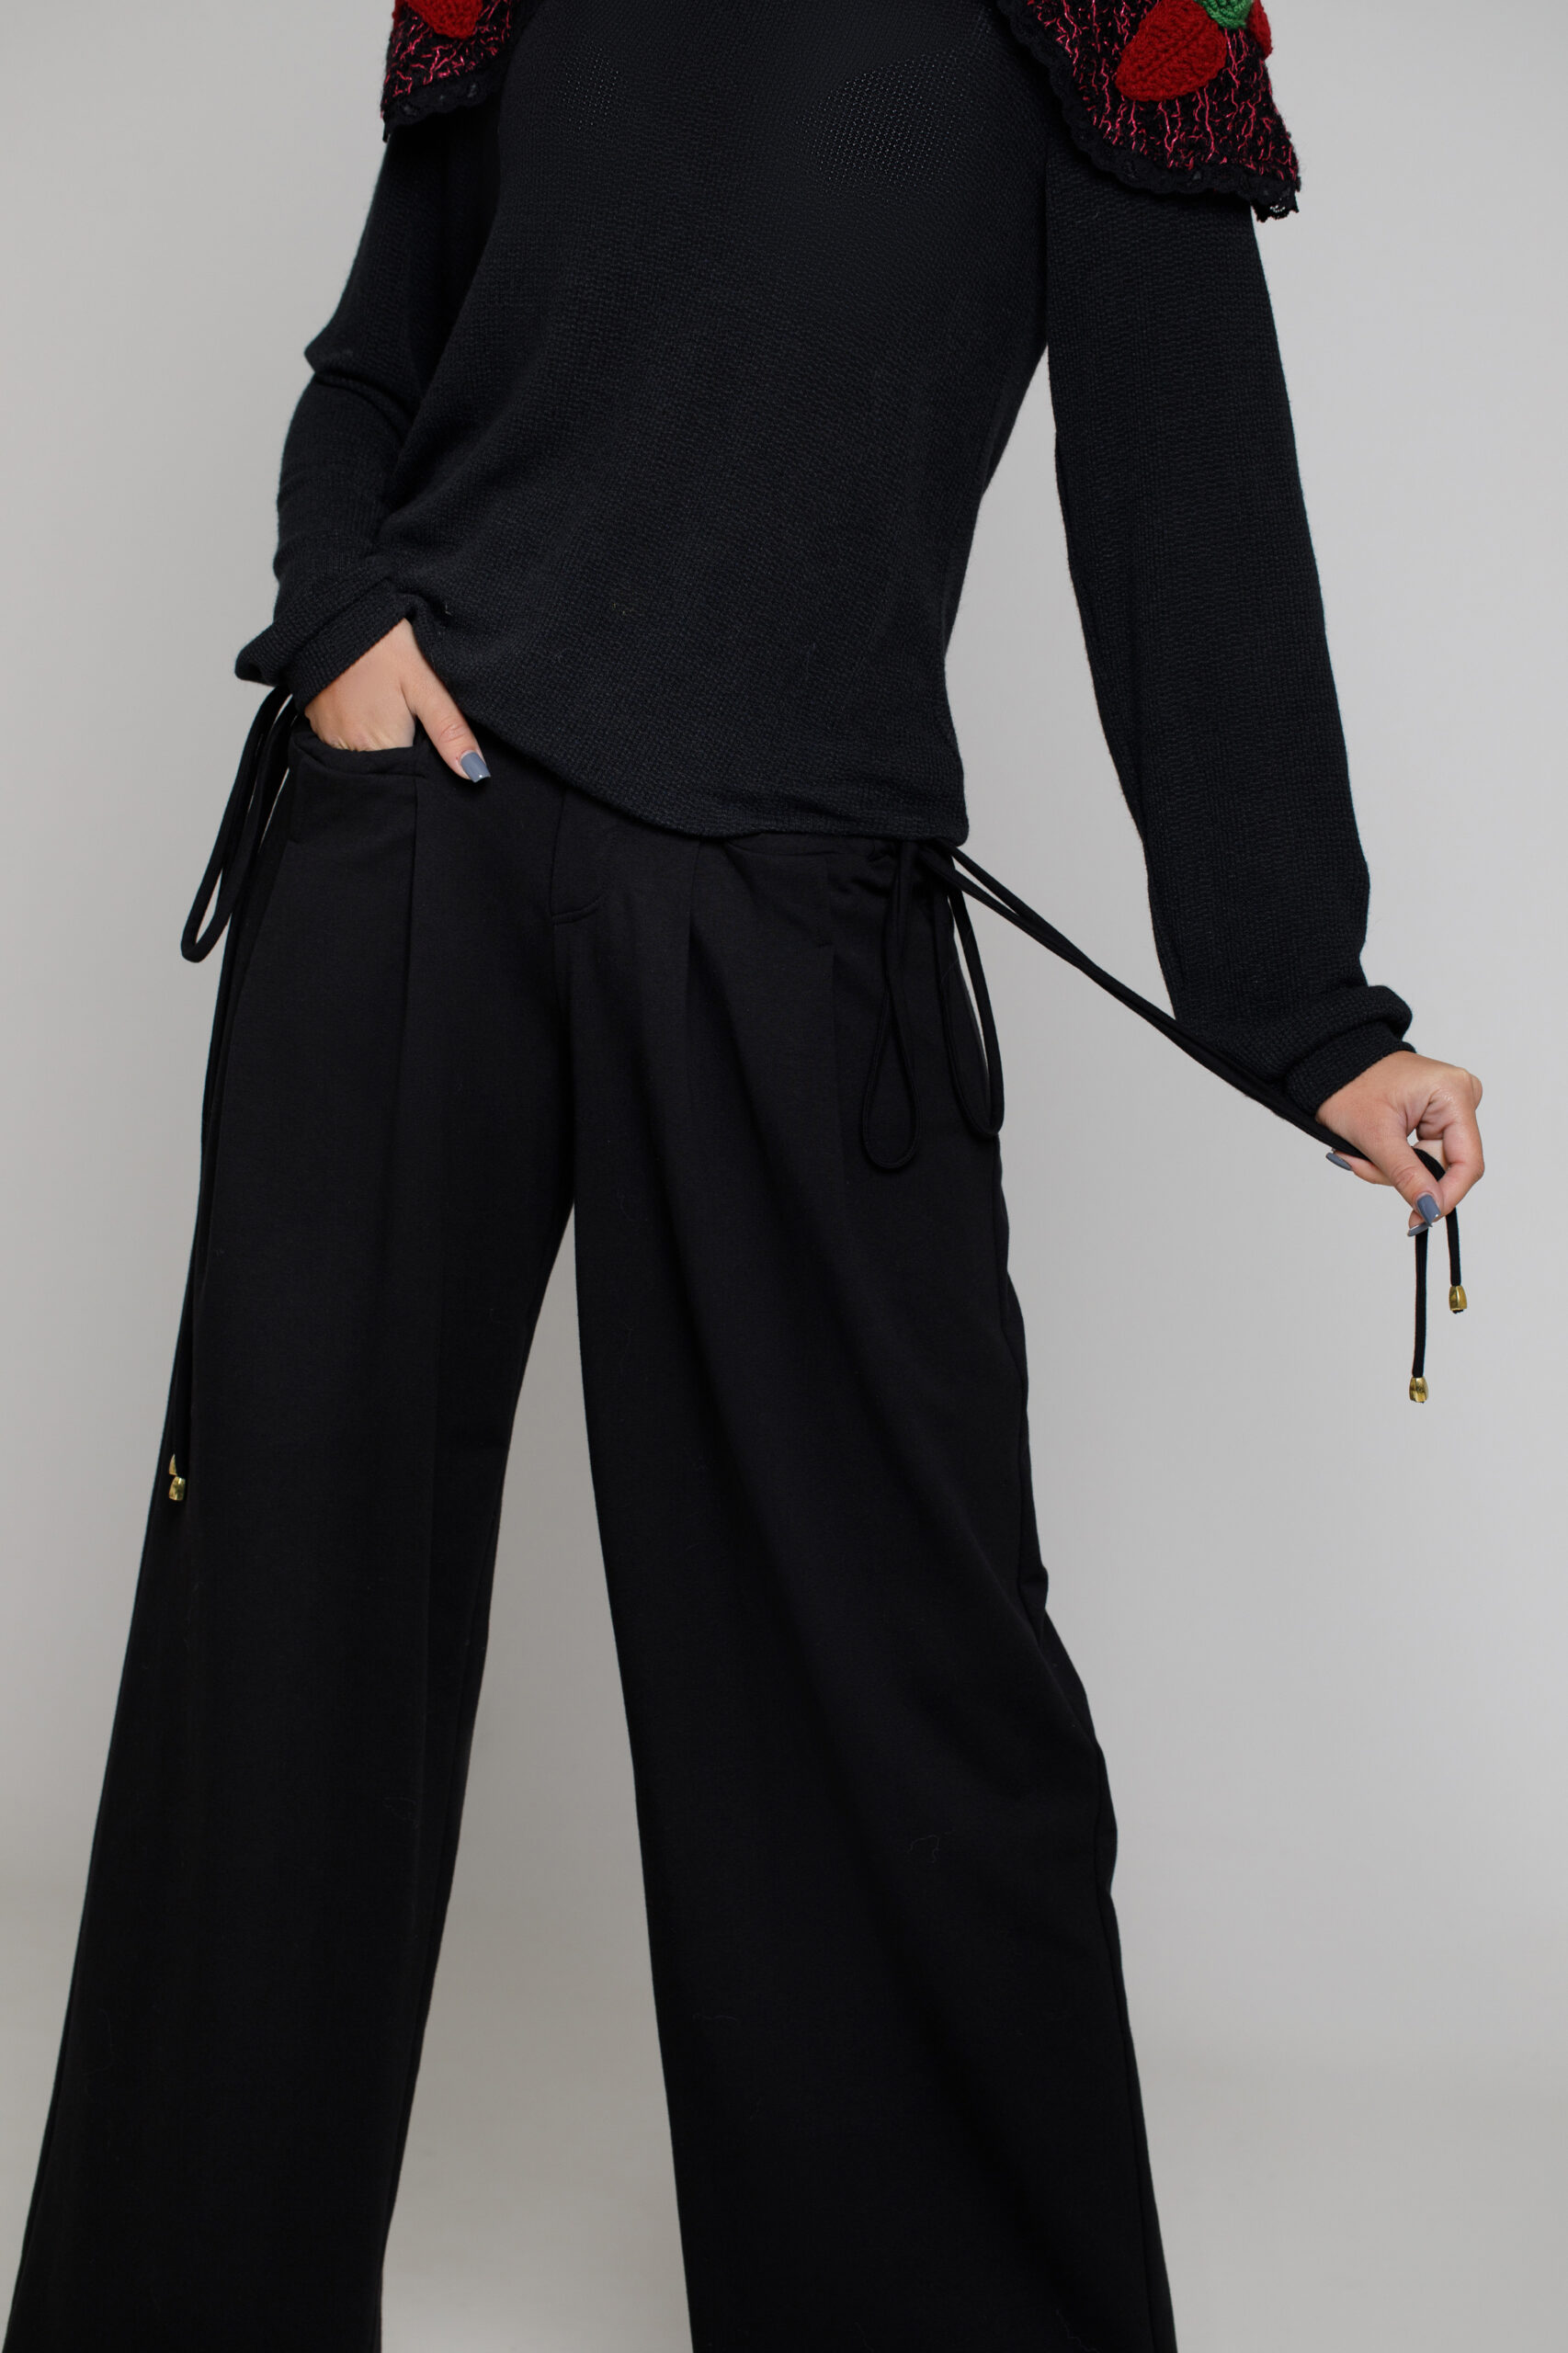 Pantalon BONNIE negru cu pense. Materiale naturale, design unicat, cu broderie si aplicatii handmade